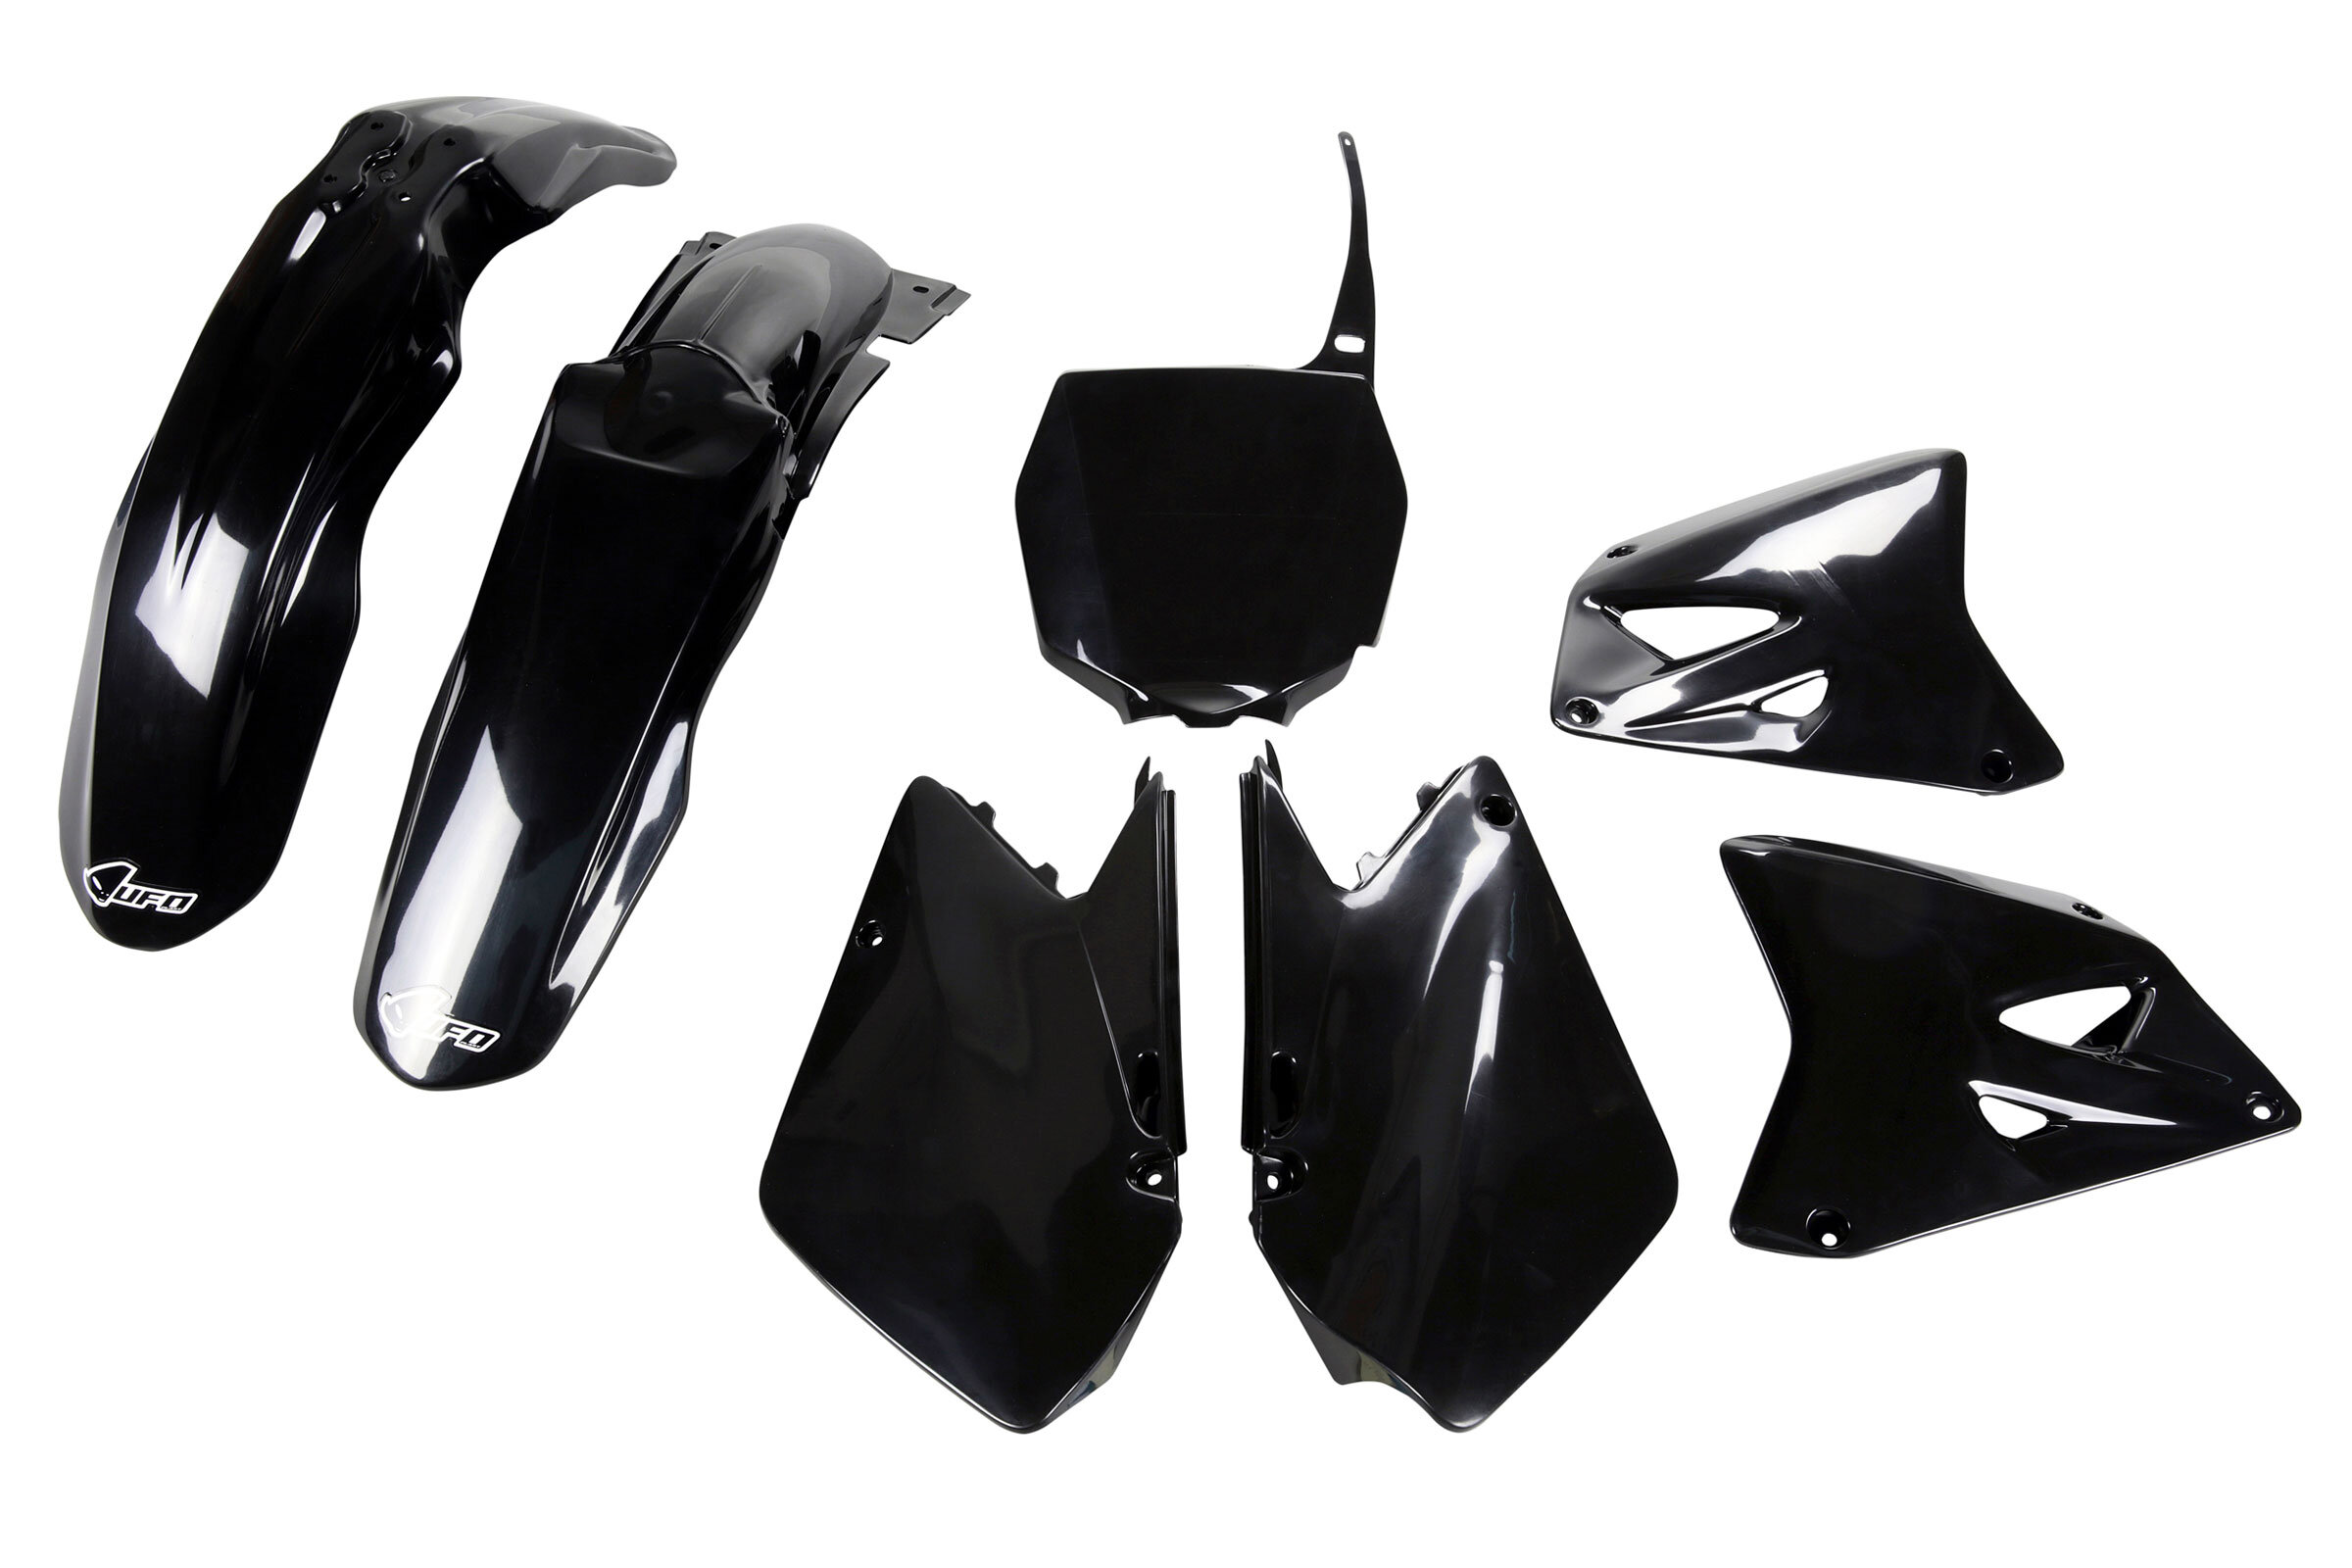 Black Plastic Kit fits 01-08 RM125, RM250